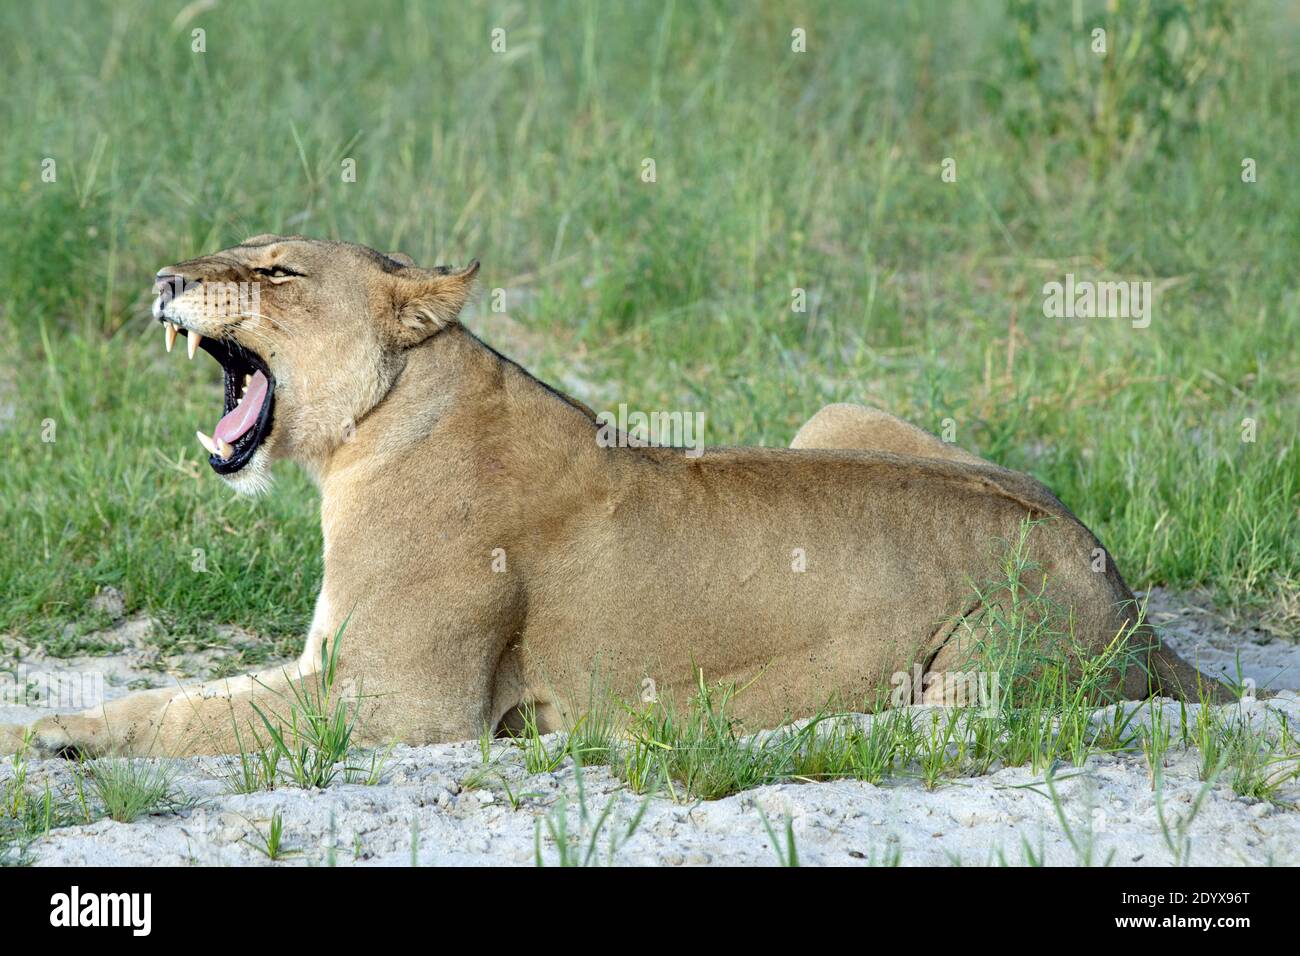 Afrikanische Löwin (Panthera lio). Liegend in der offenen, Kopf angehoben, gähnend offenbart einen weit geöffneten Mund und Kiefer Eckzähne und eine raspende Zunge. S Stockfoto